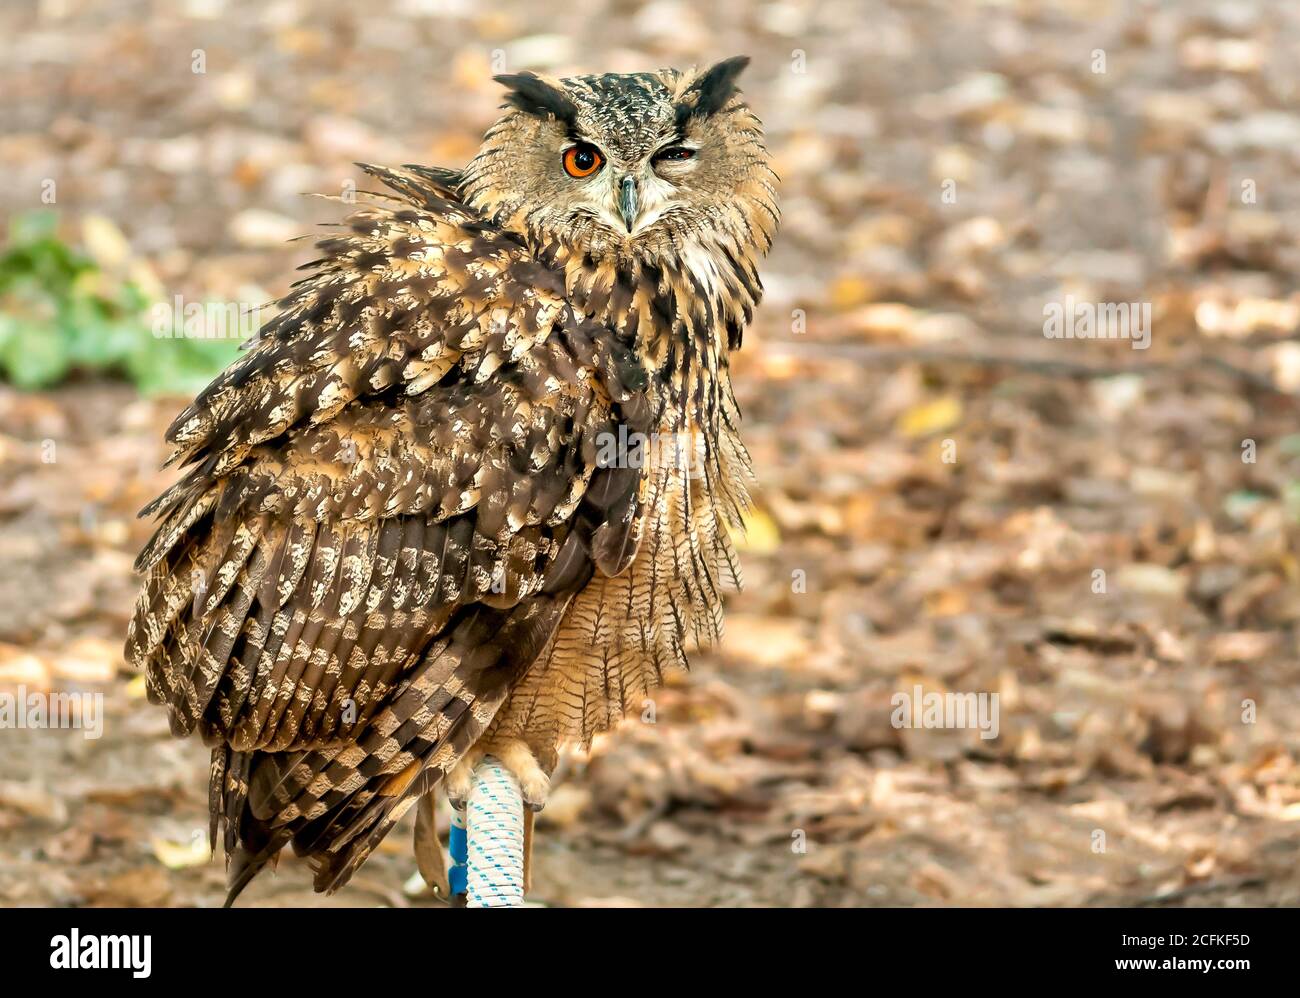 Eurasian eagle-owl sitting with one eye closed. Stock Photo